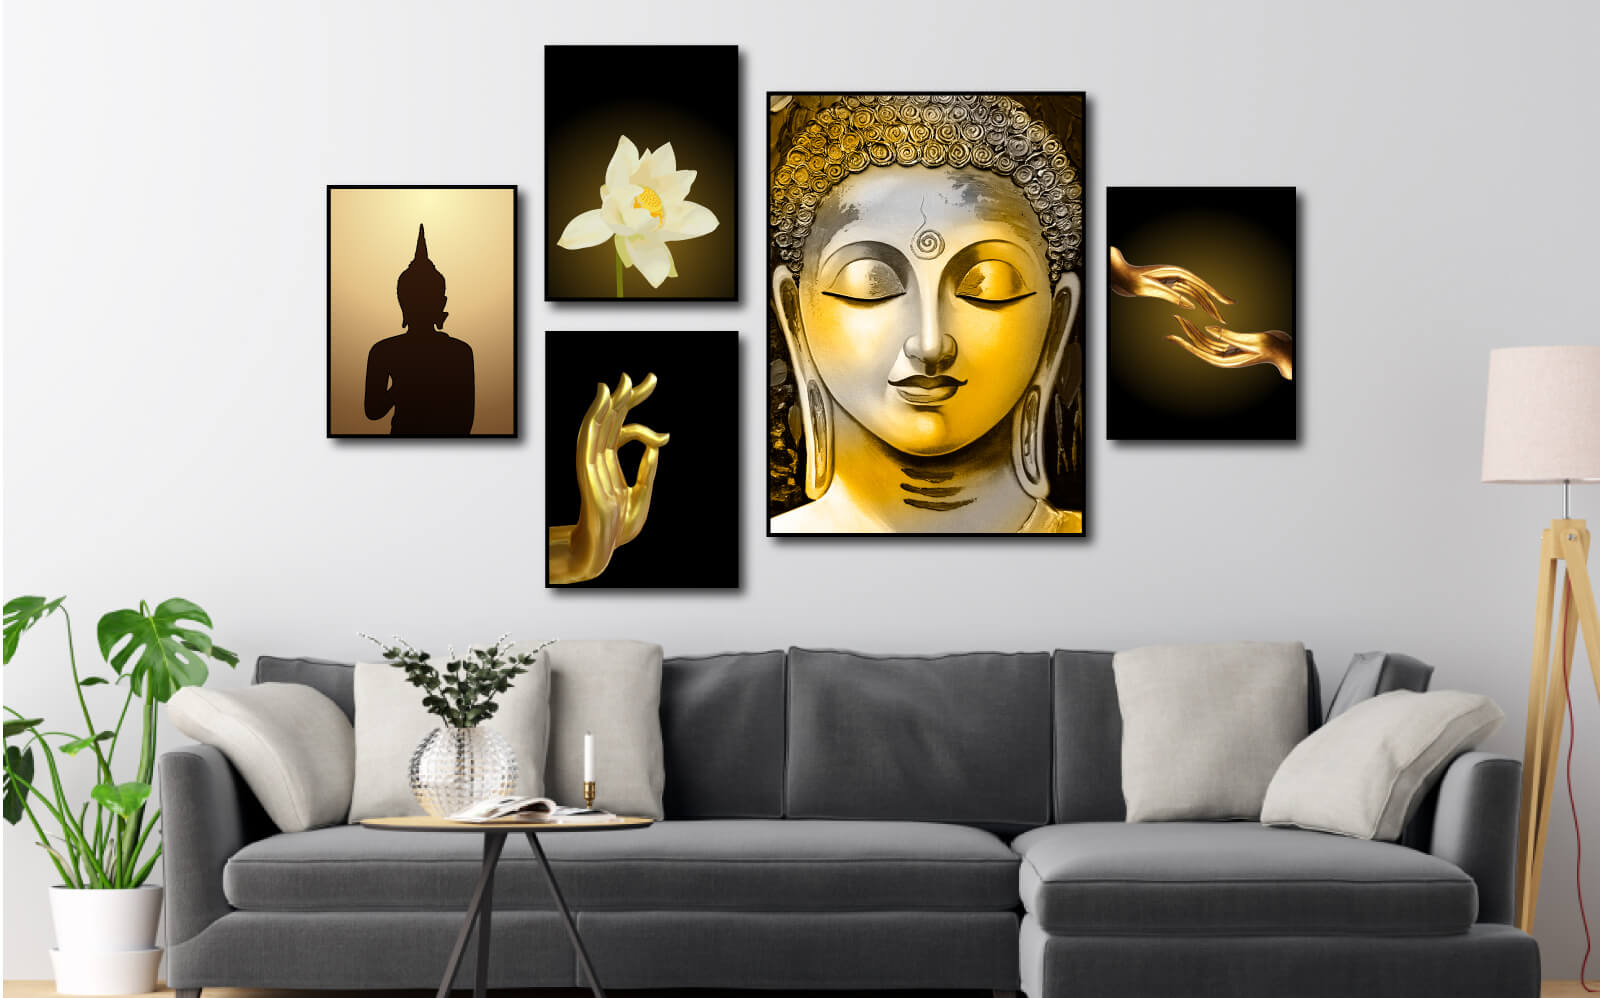 Tranh Phật là những bức tranh mô tả chân dung các vị Phật như Phật A Di Đà, Phật Quan Âm hay Phật Di Lặc.